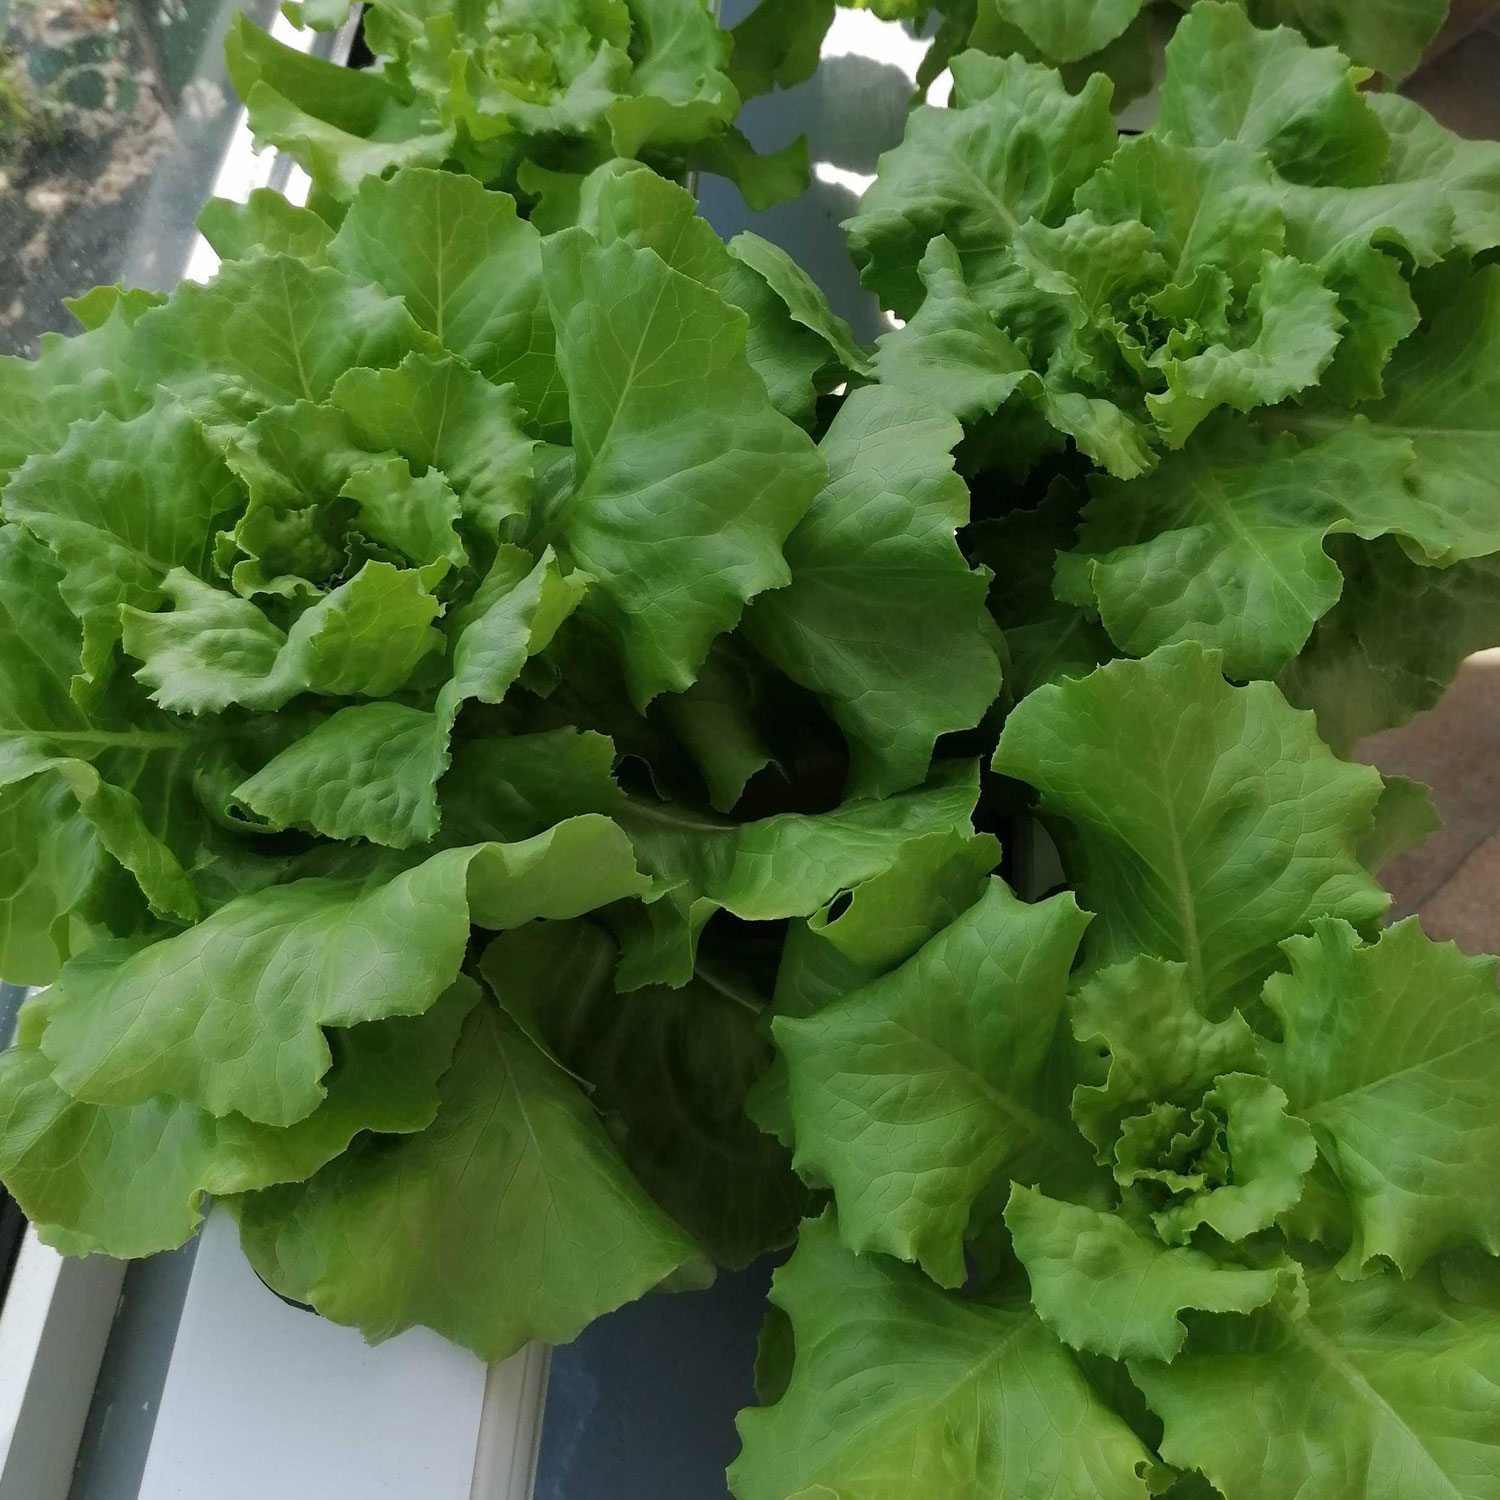 Vertikal Farming soll die Welt retten - mit Salat?!